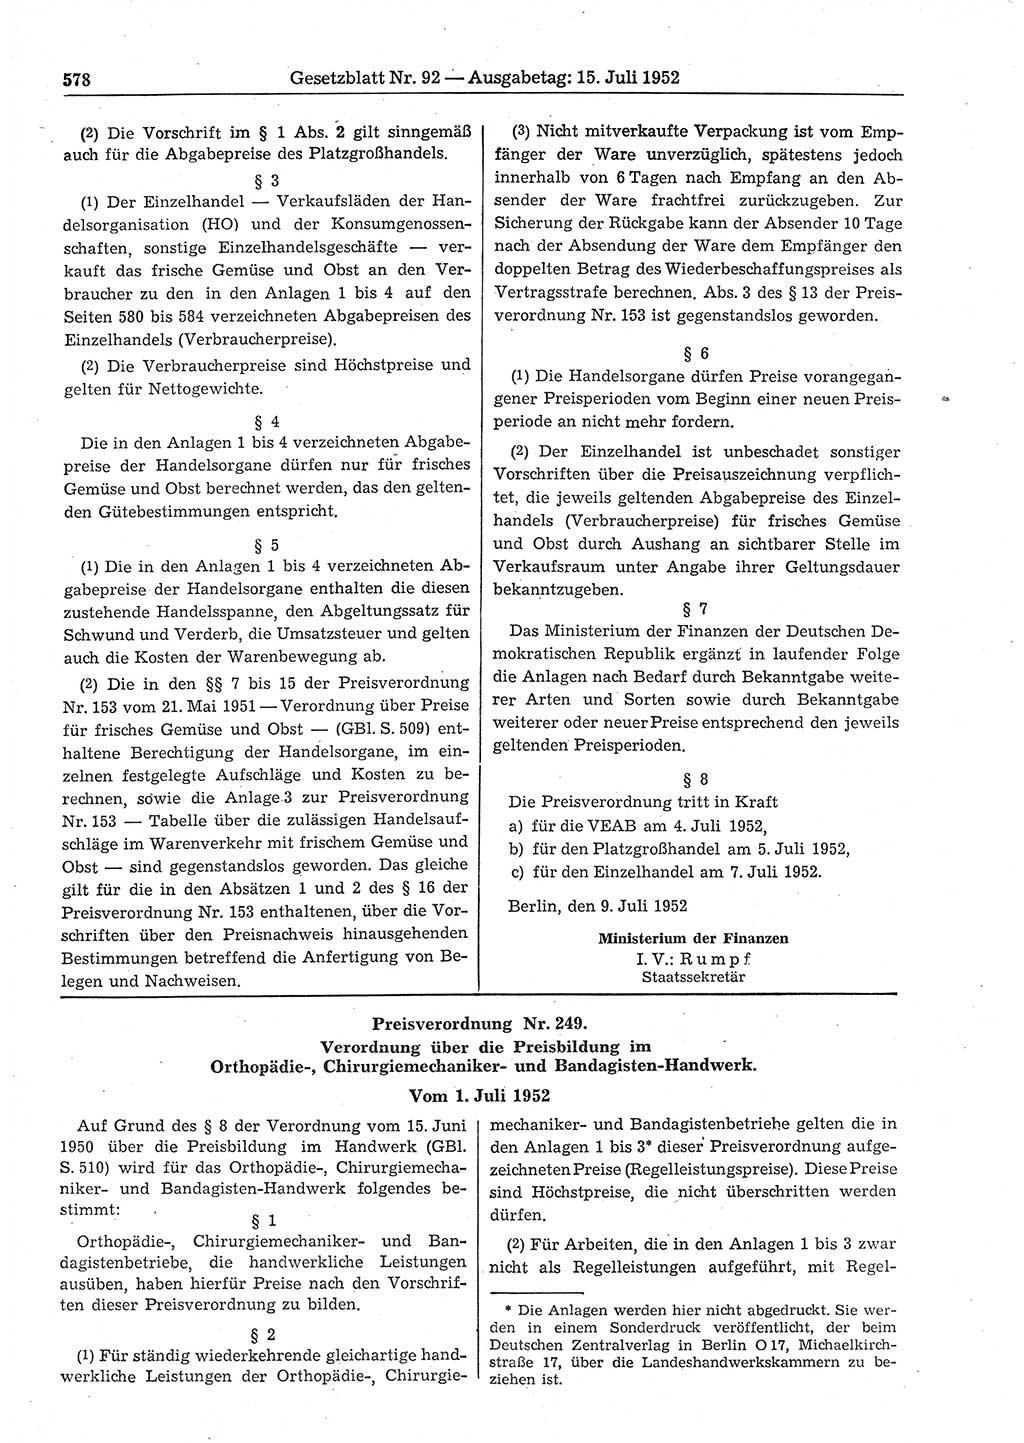 Gesetzblatt (GBl.) der Deutschen Demokratischen Republik (DDR) 1952, Seite 578 (GBl. DDR 1952, S. 578)